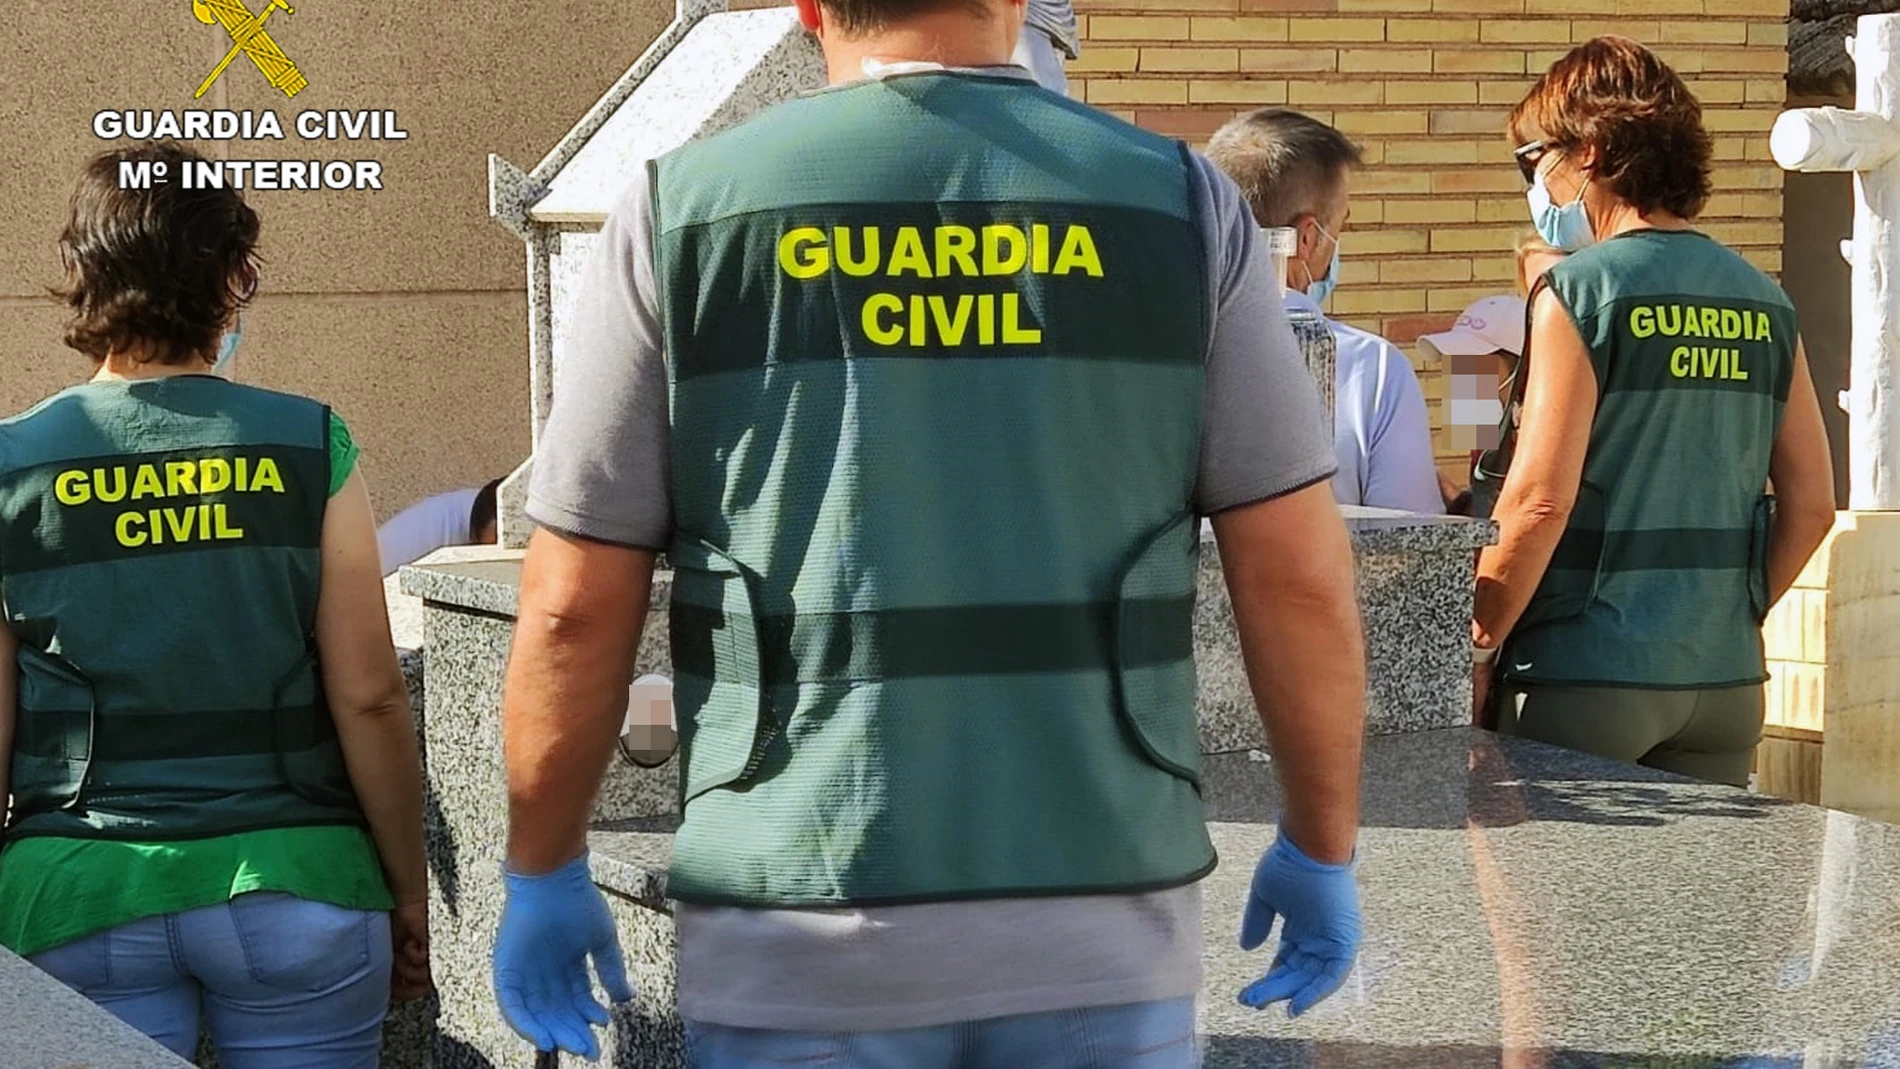 La Guardia Civil ha solicitado información sobre los movimientos del año 2014